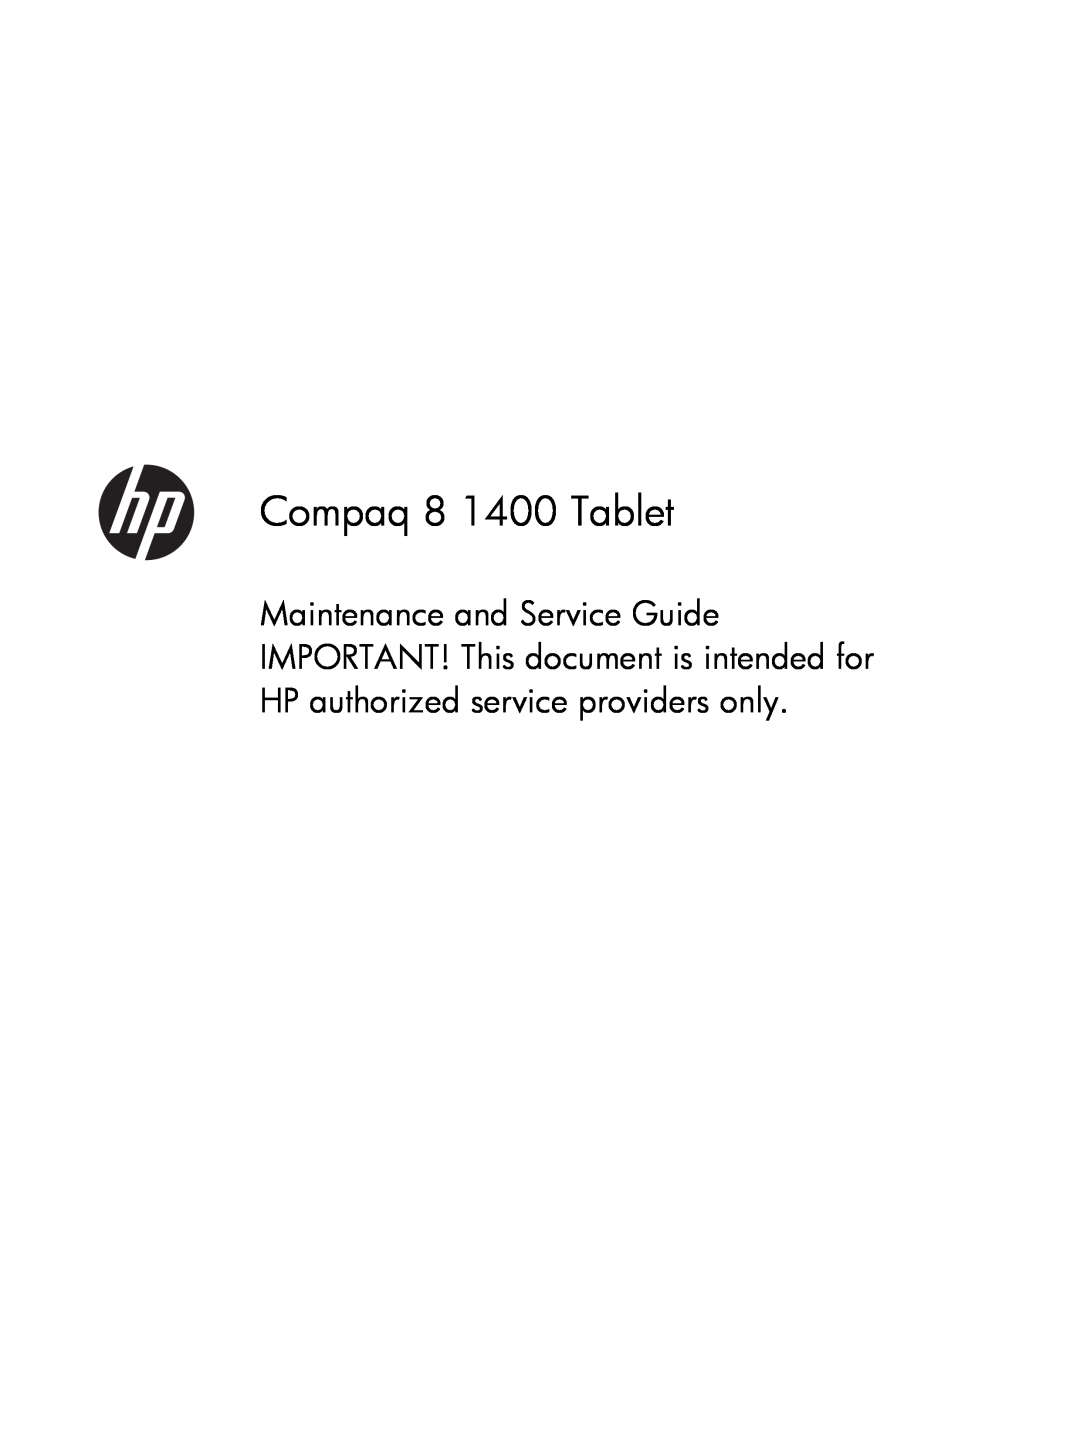 HP manual Compaq 8 1400 Tablet 